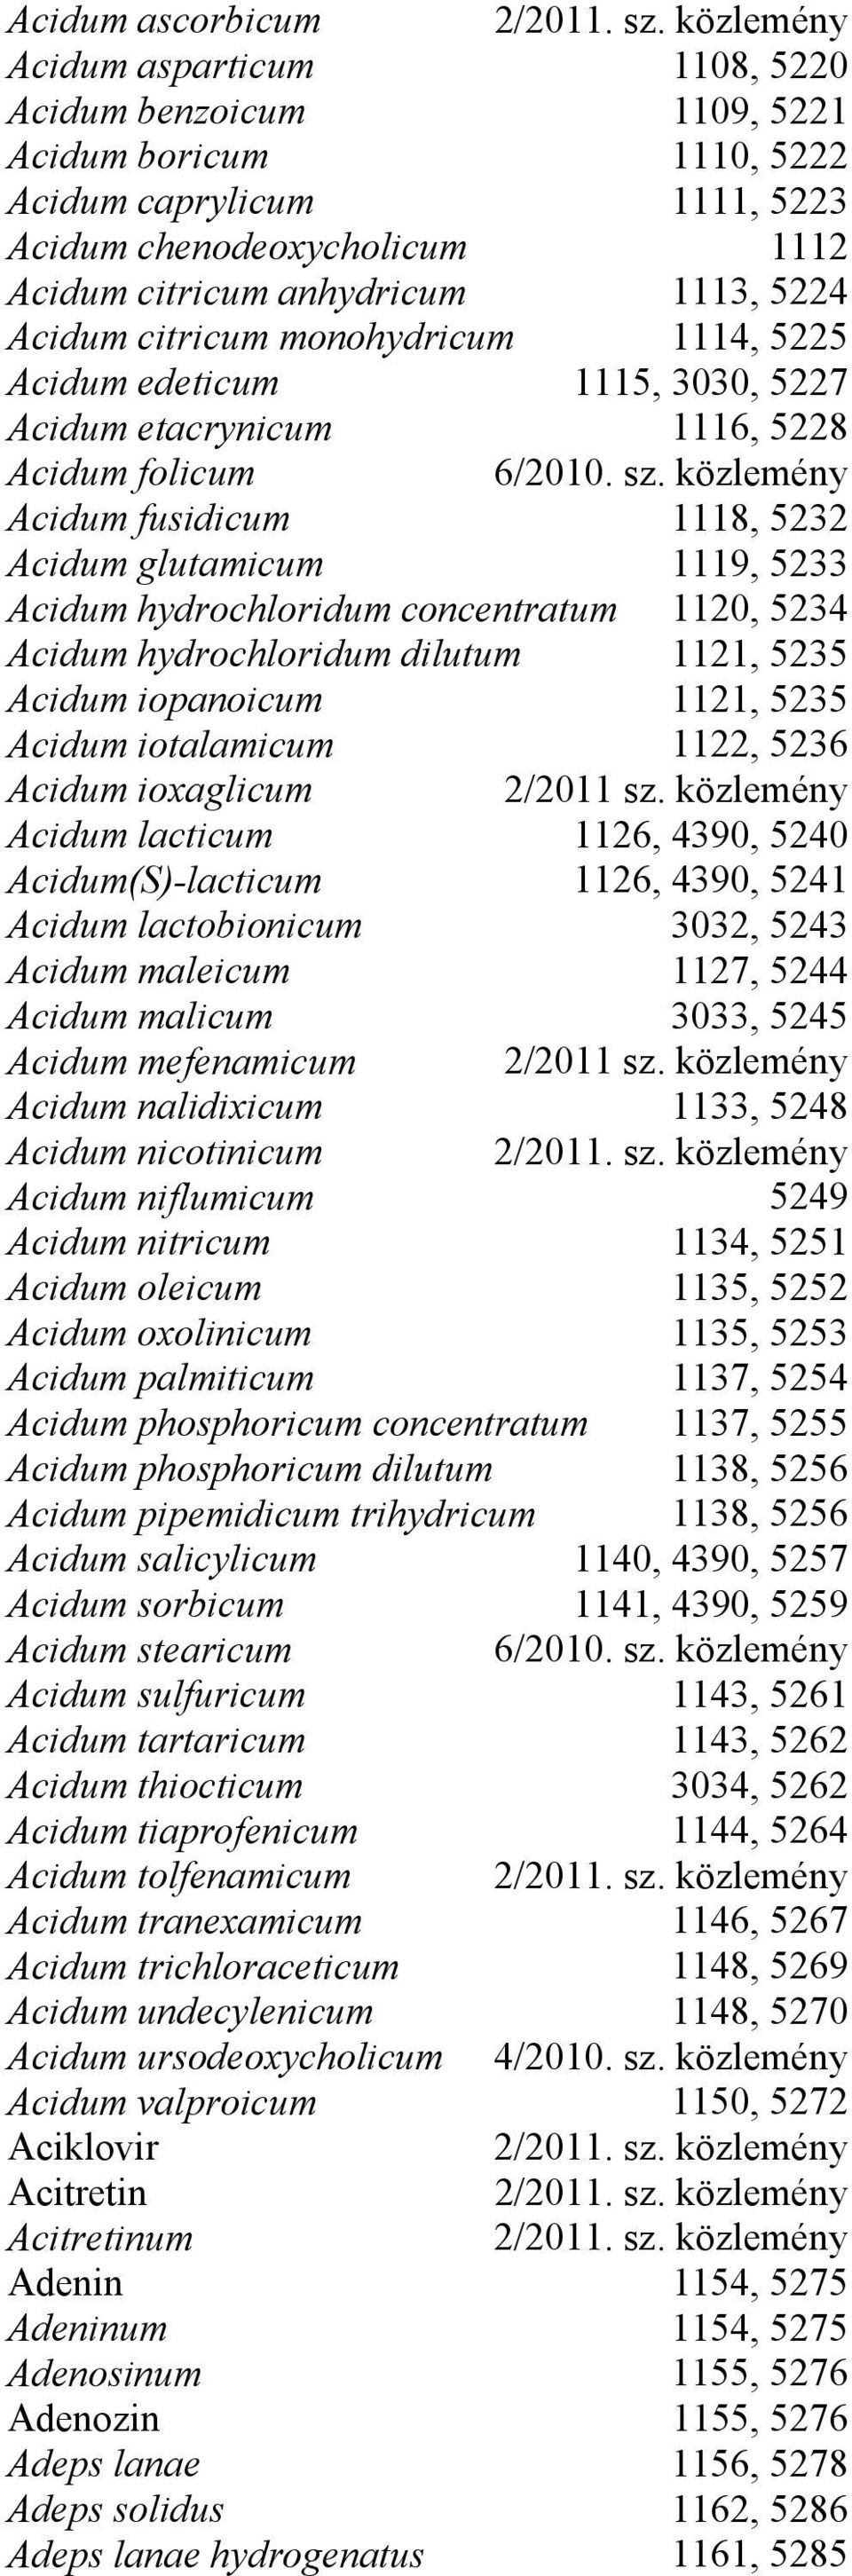 concentratum 1120, 5234 Acidum hydrochloridum dilutum 1121, 5235 Acidum iopanoicum 1121, 5235 Acidum iotalamicum 1122, 5236 Acidum ioxaglicum Acidum lacticum 1126, 4390, 5240 Acidum(S)-lacticum 1126,